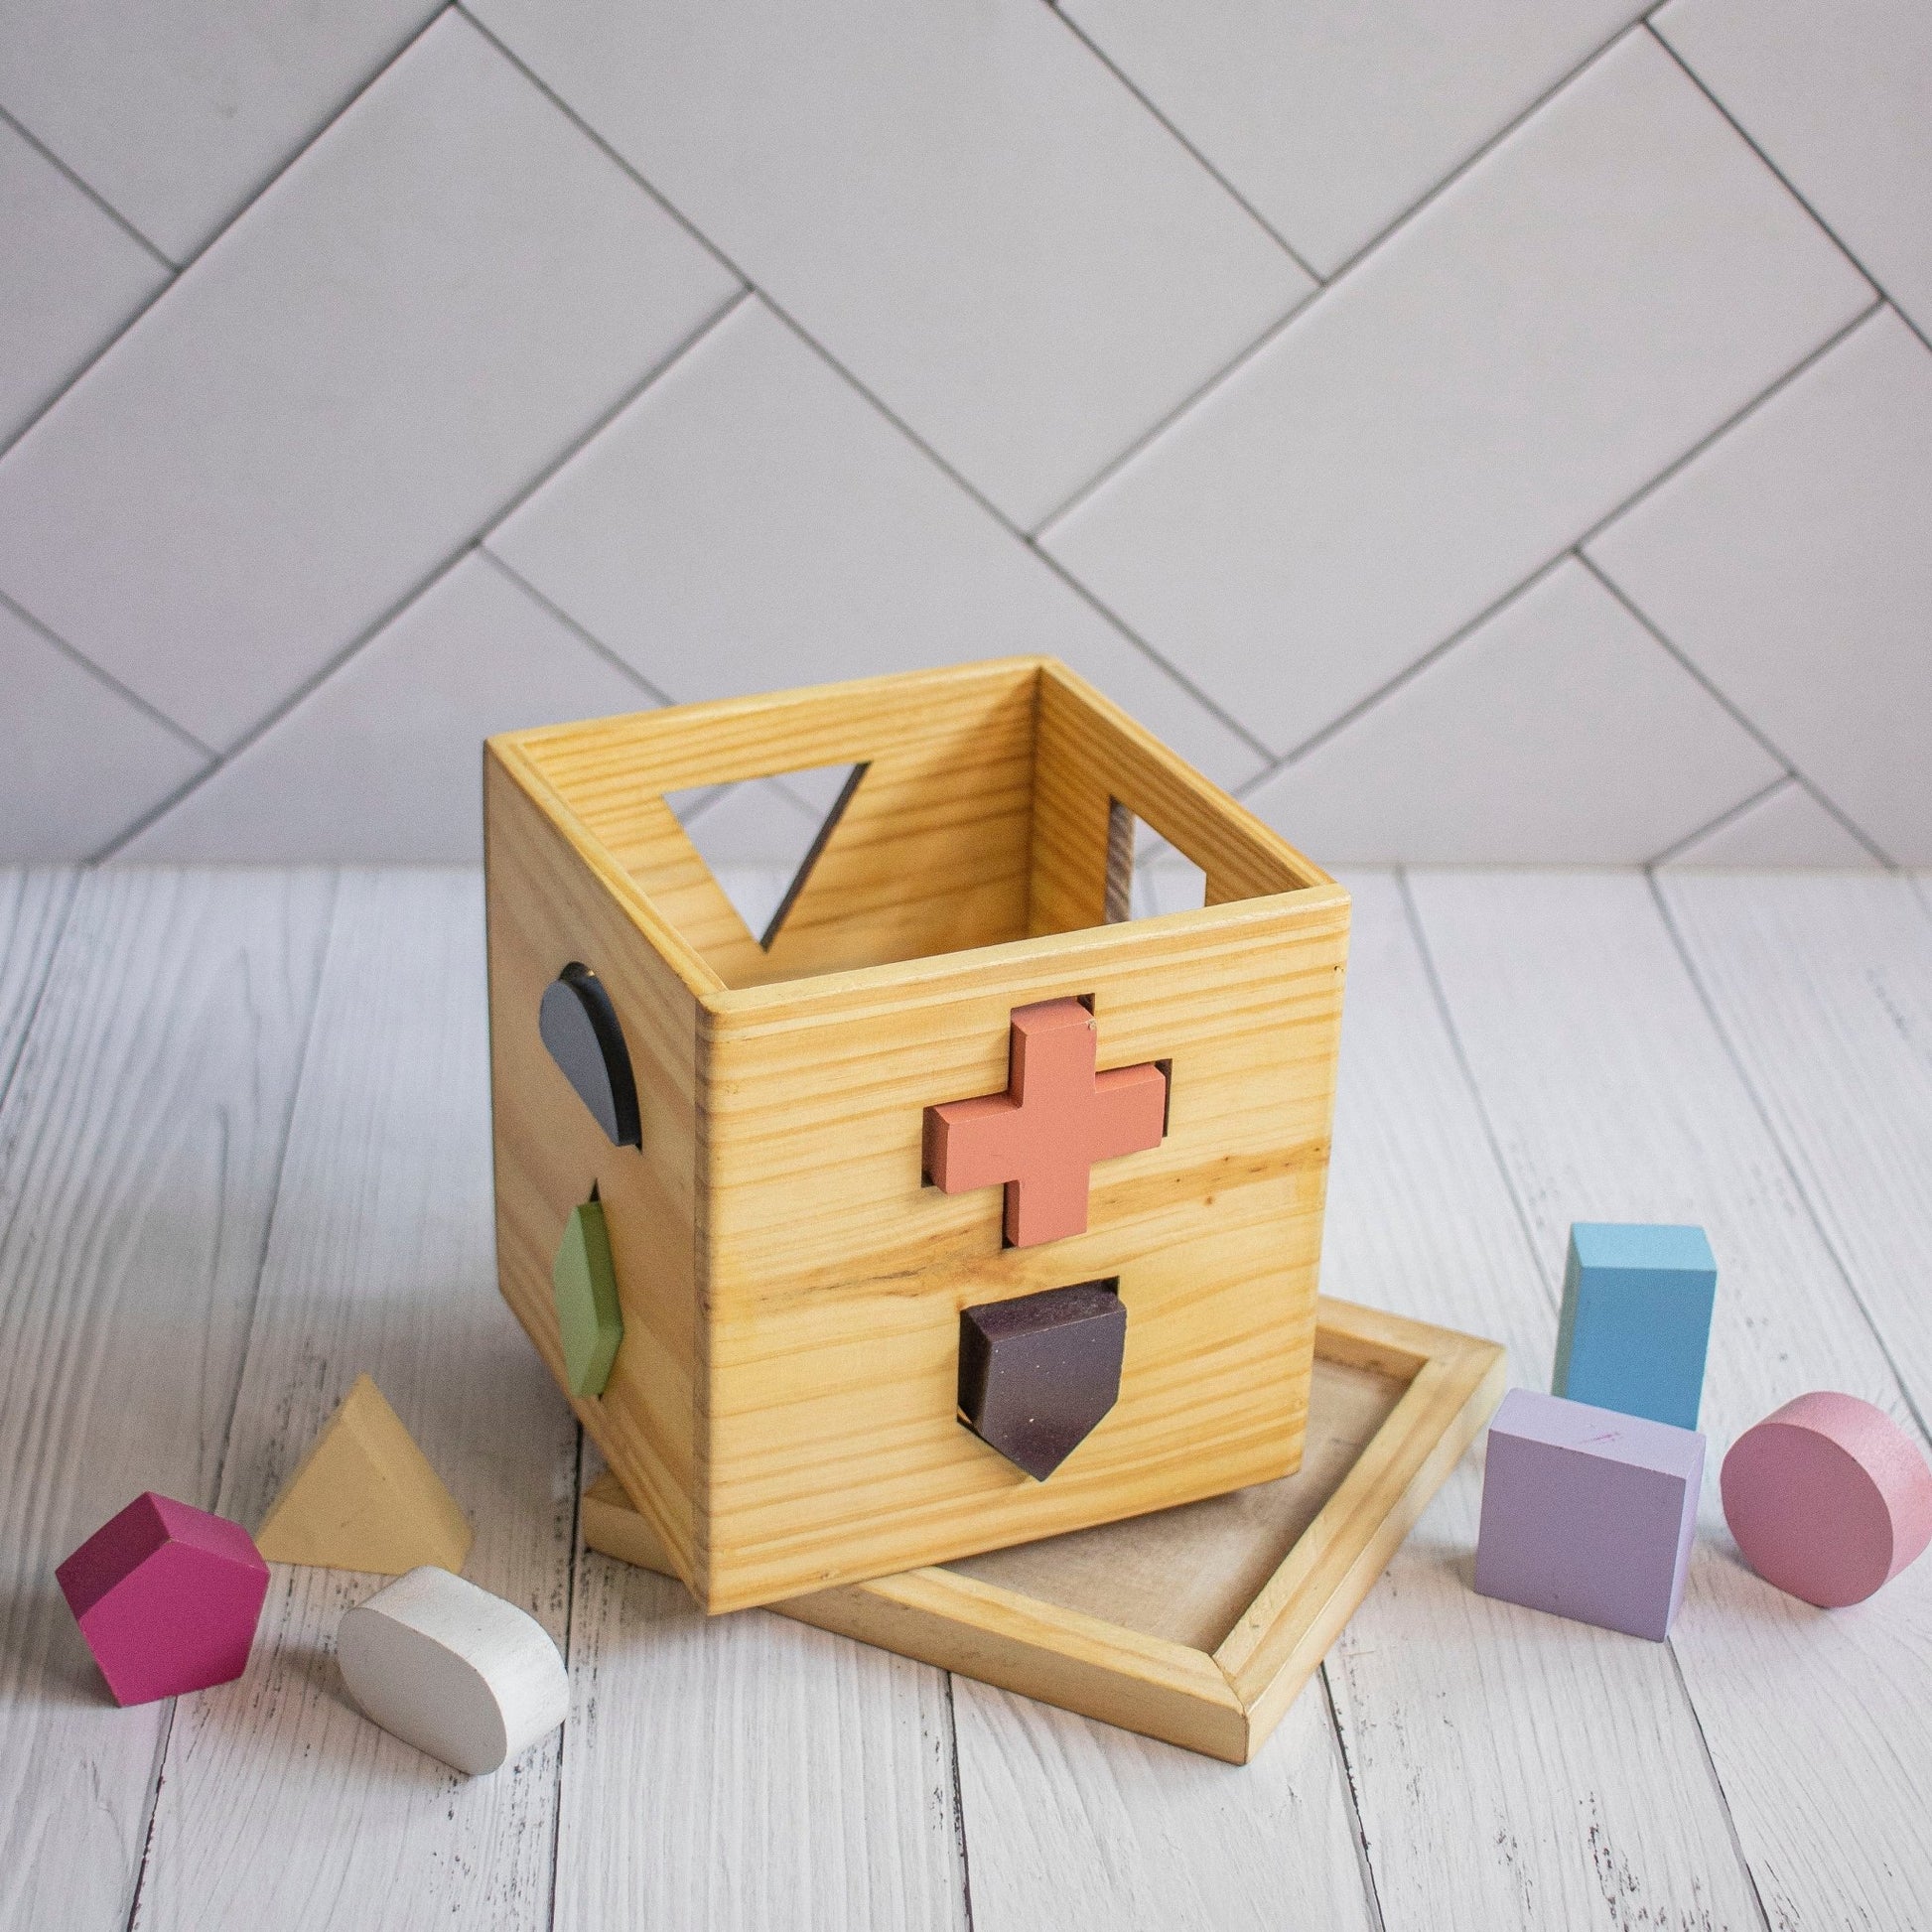 Wooden Shape Training Toy For Kids - Ebony Woodcraftswooden toys